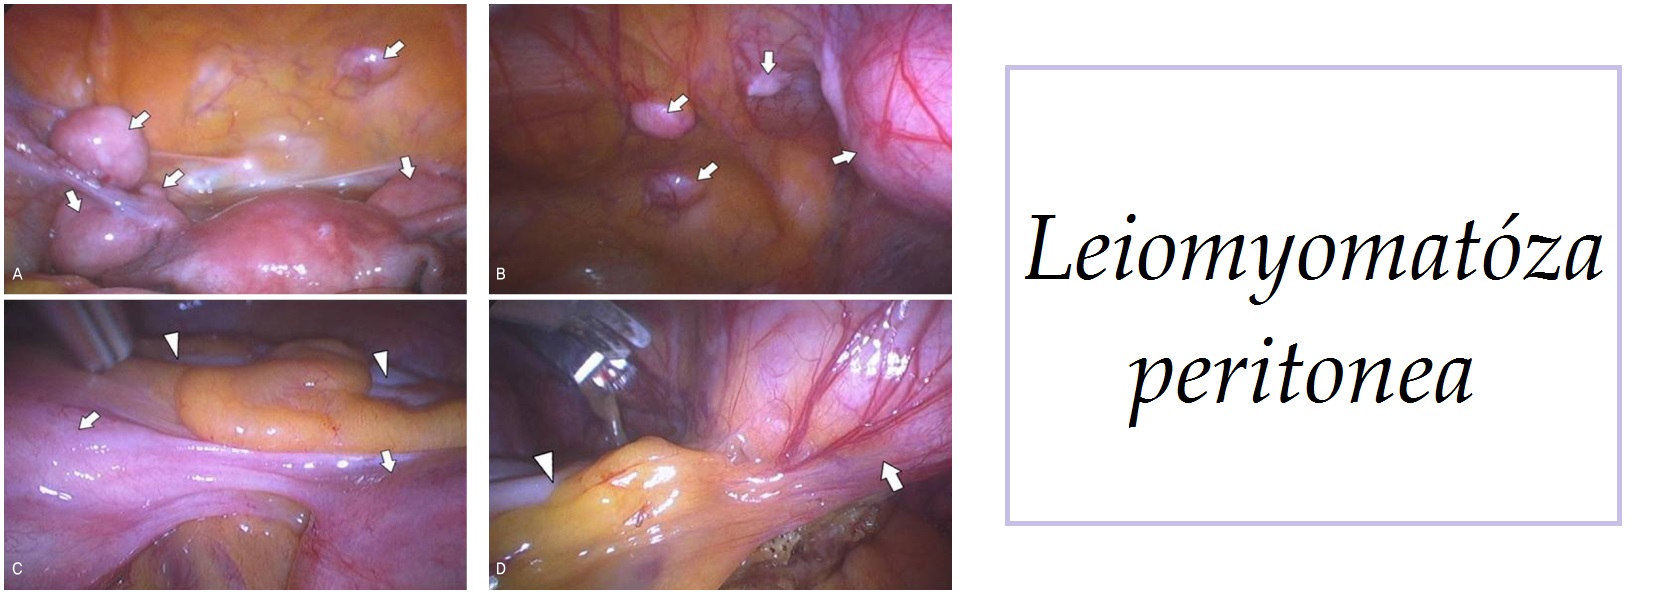 leiomyomatoza peritonea priznaky projevy symptomy pricina lecba